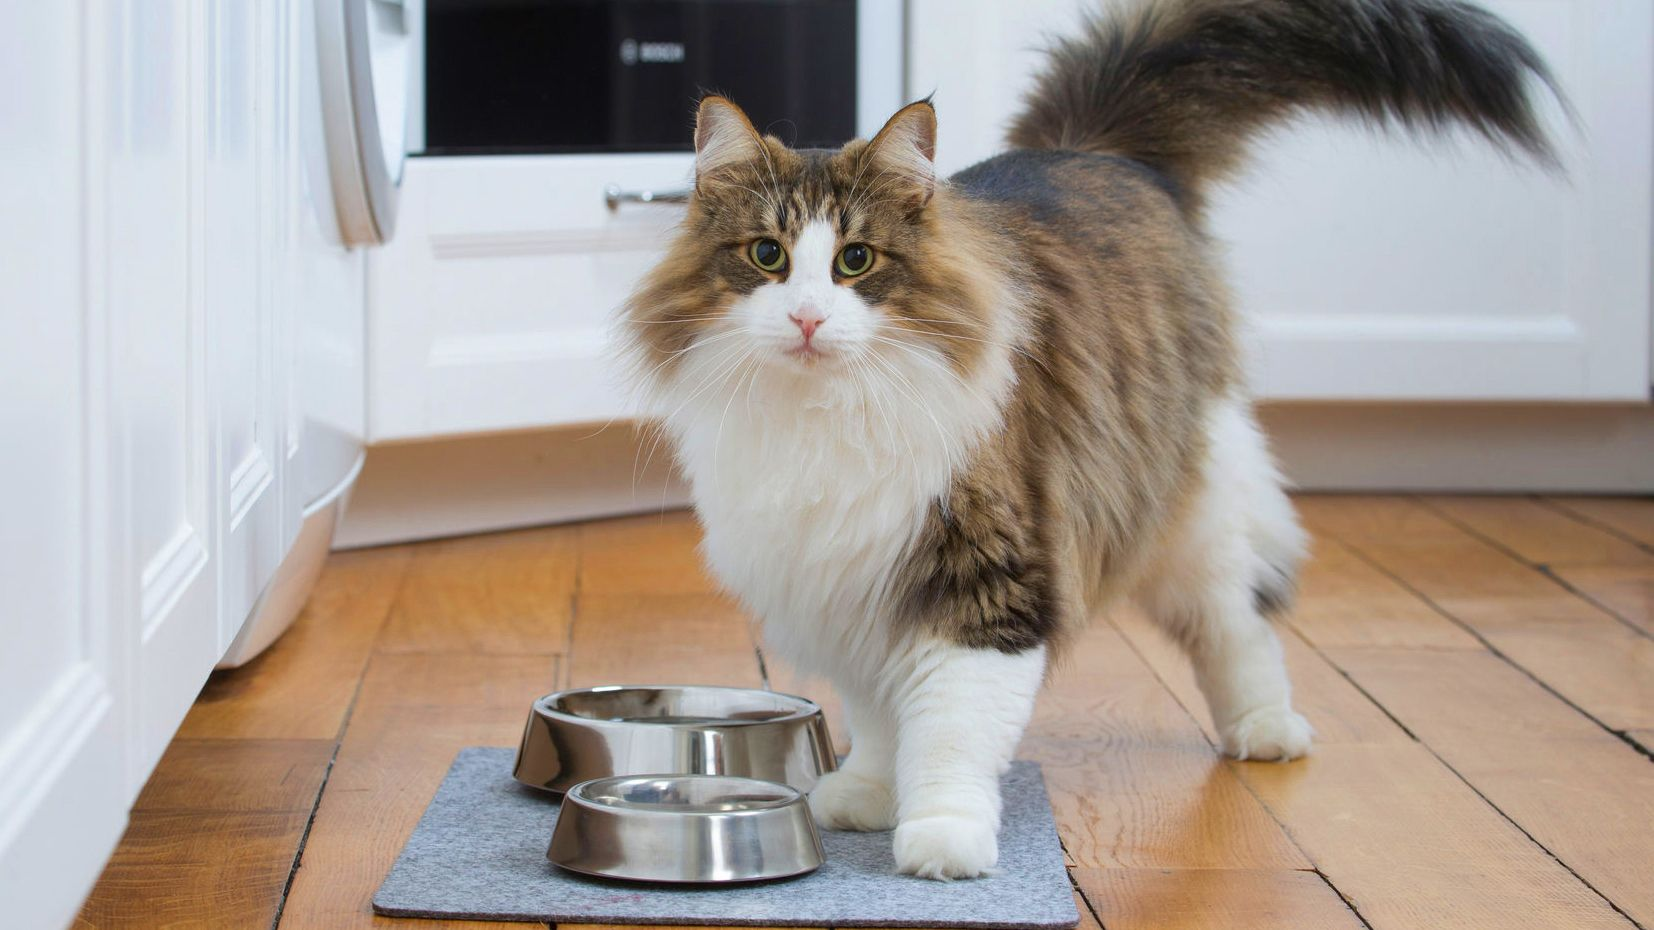 Kot norweski leśny stoi przy miskach z jedzeniem i wodą